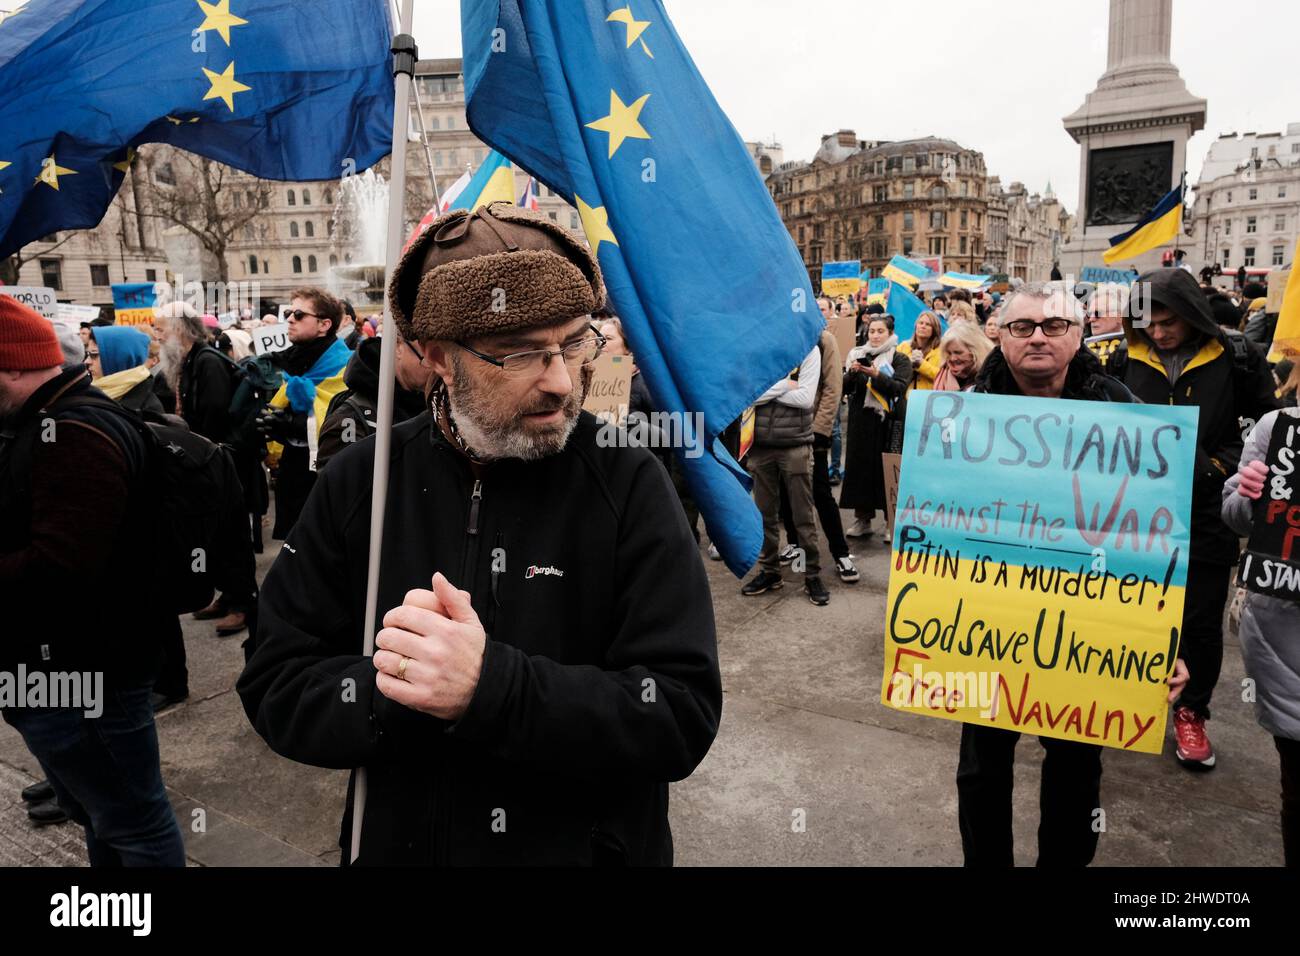 5th marzo 2022, Londra, Regno Unito. Cittadini ucraini e sostenitori pro-Ucraina si radunano a Trafalgar Square per protestare contro l'invasione russa e la guerra in Ucraina. I cittadini russi si oppongono alla guerra. Foto Stock